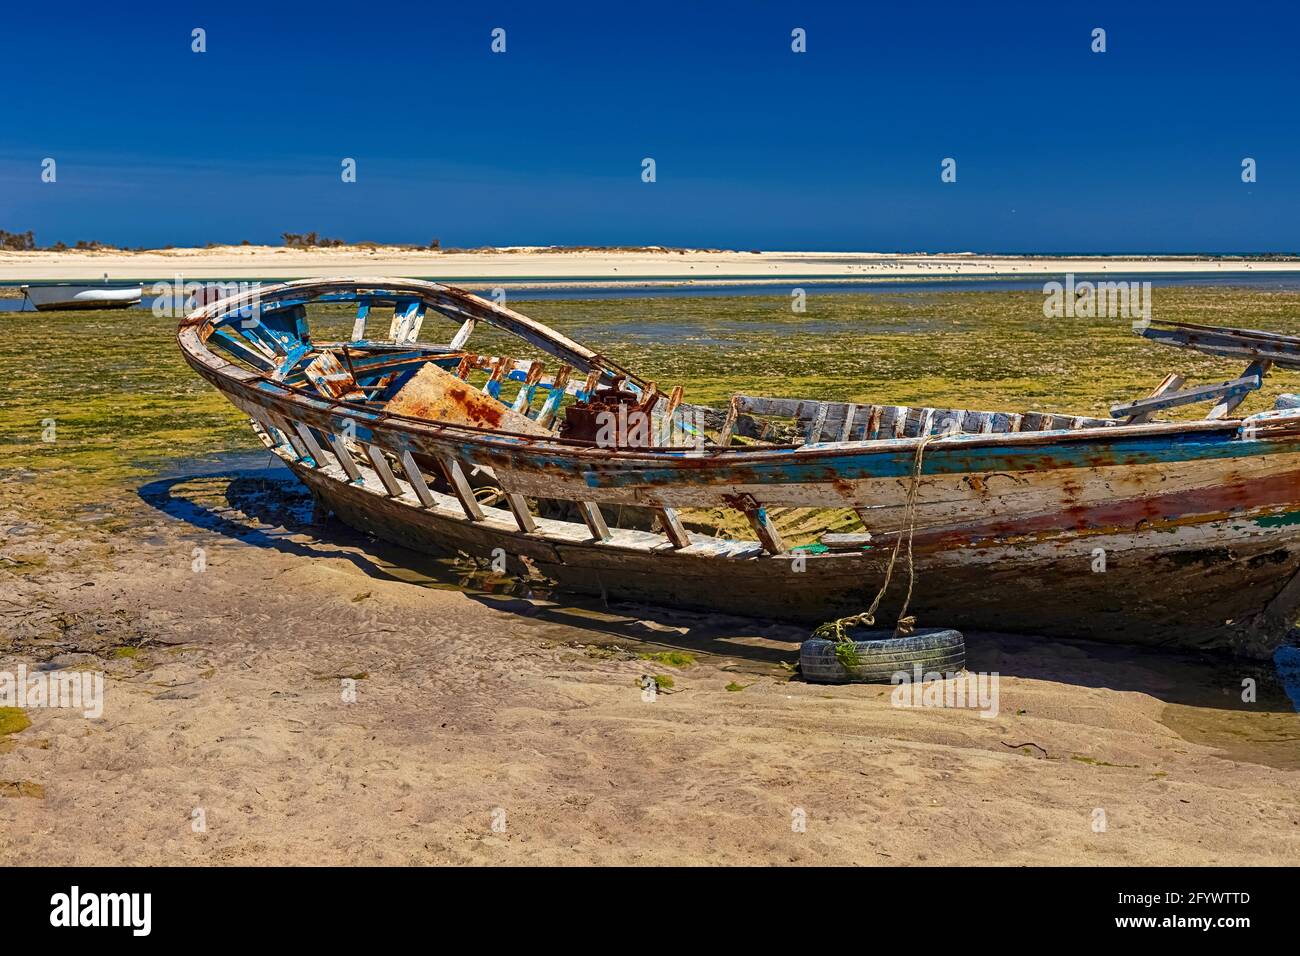 Paysage marin. Belle vue sur un bateau naufragé dans la baie méditerranéenne de l'île de Djerba, Tunisie Banque D'Images